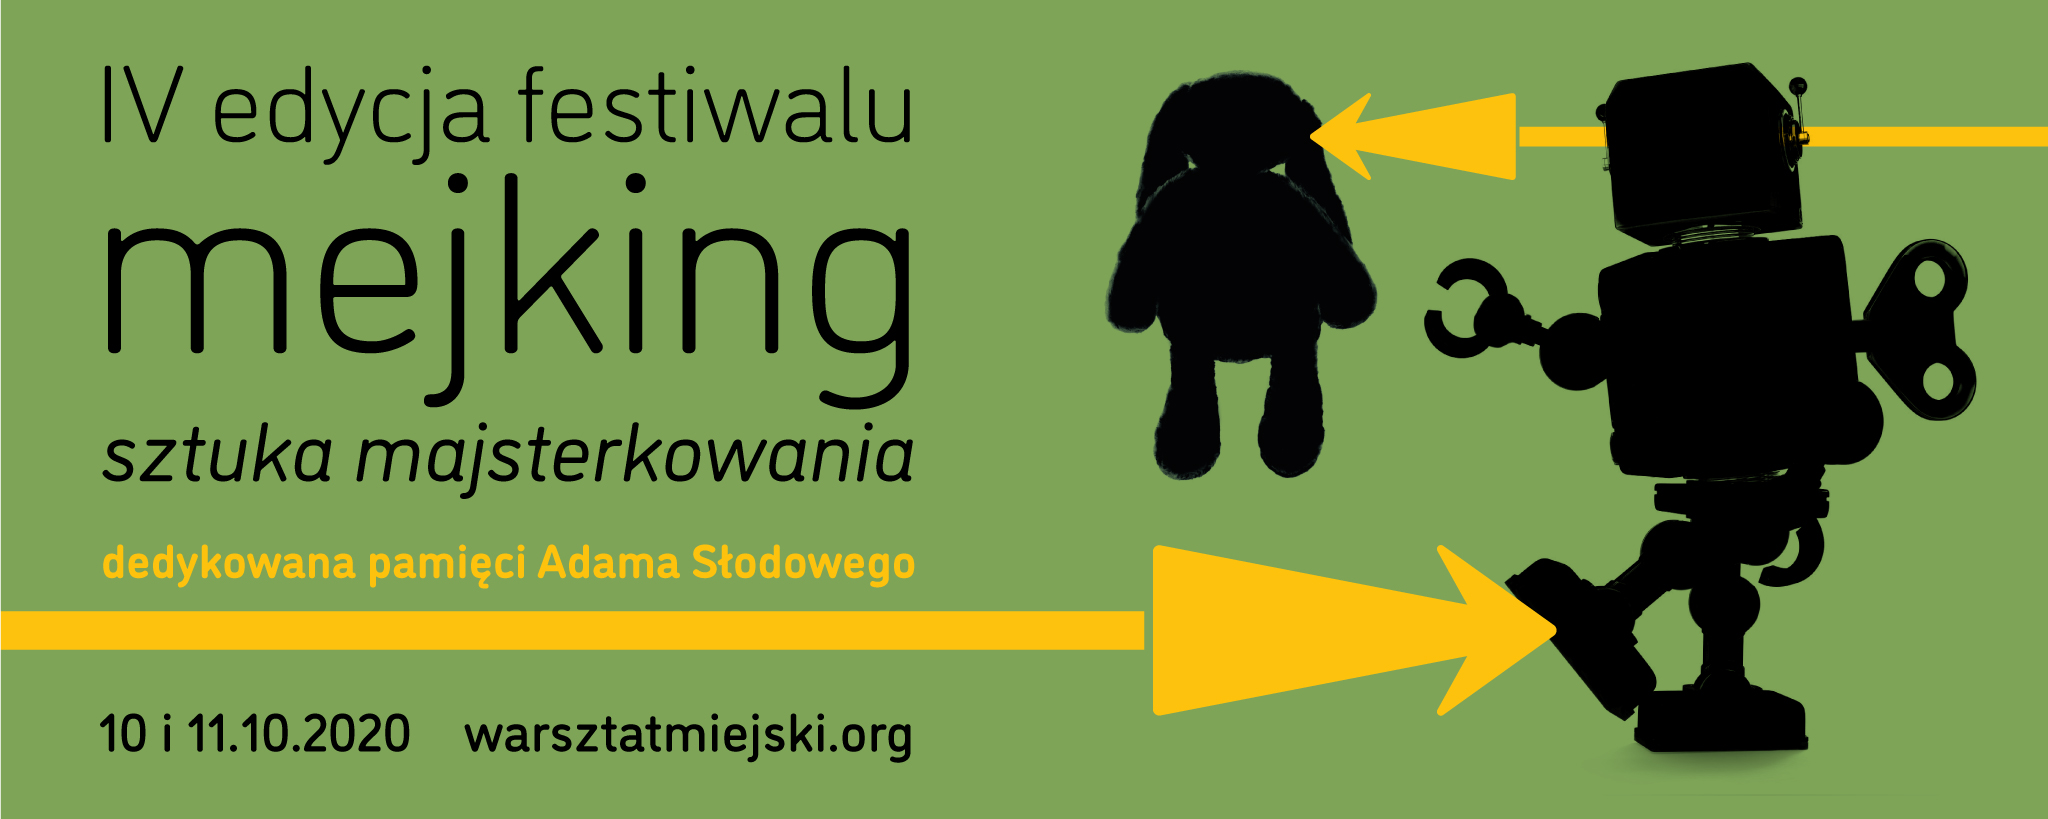 Festiwal mejKiNG 2020 - sztuka majsterkowania